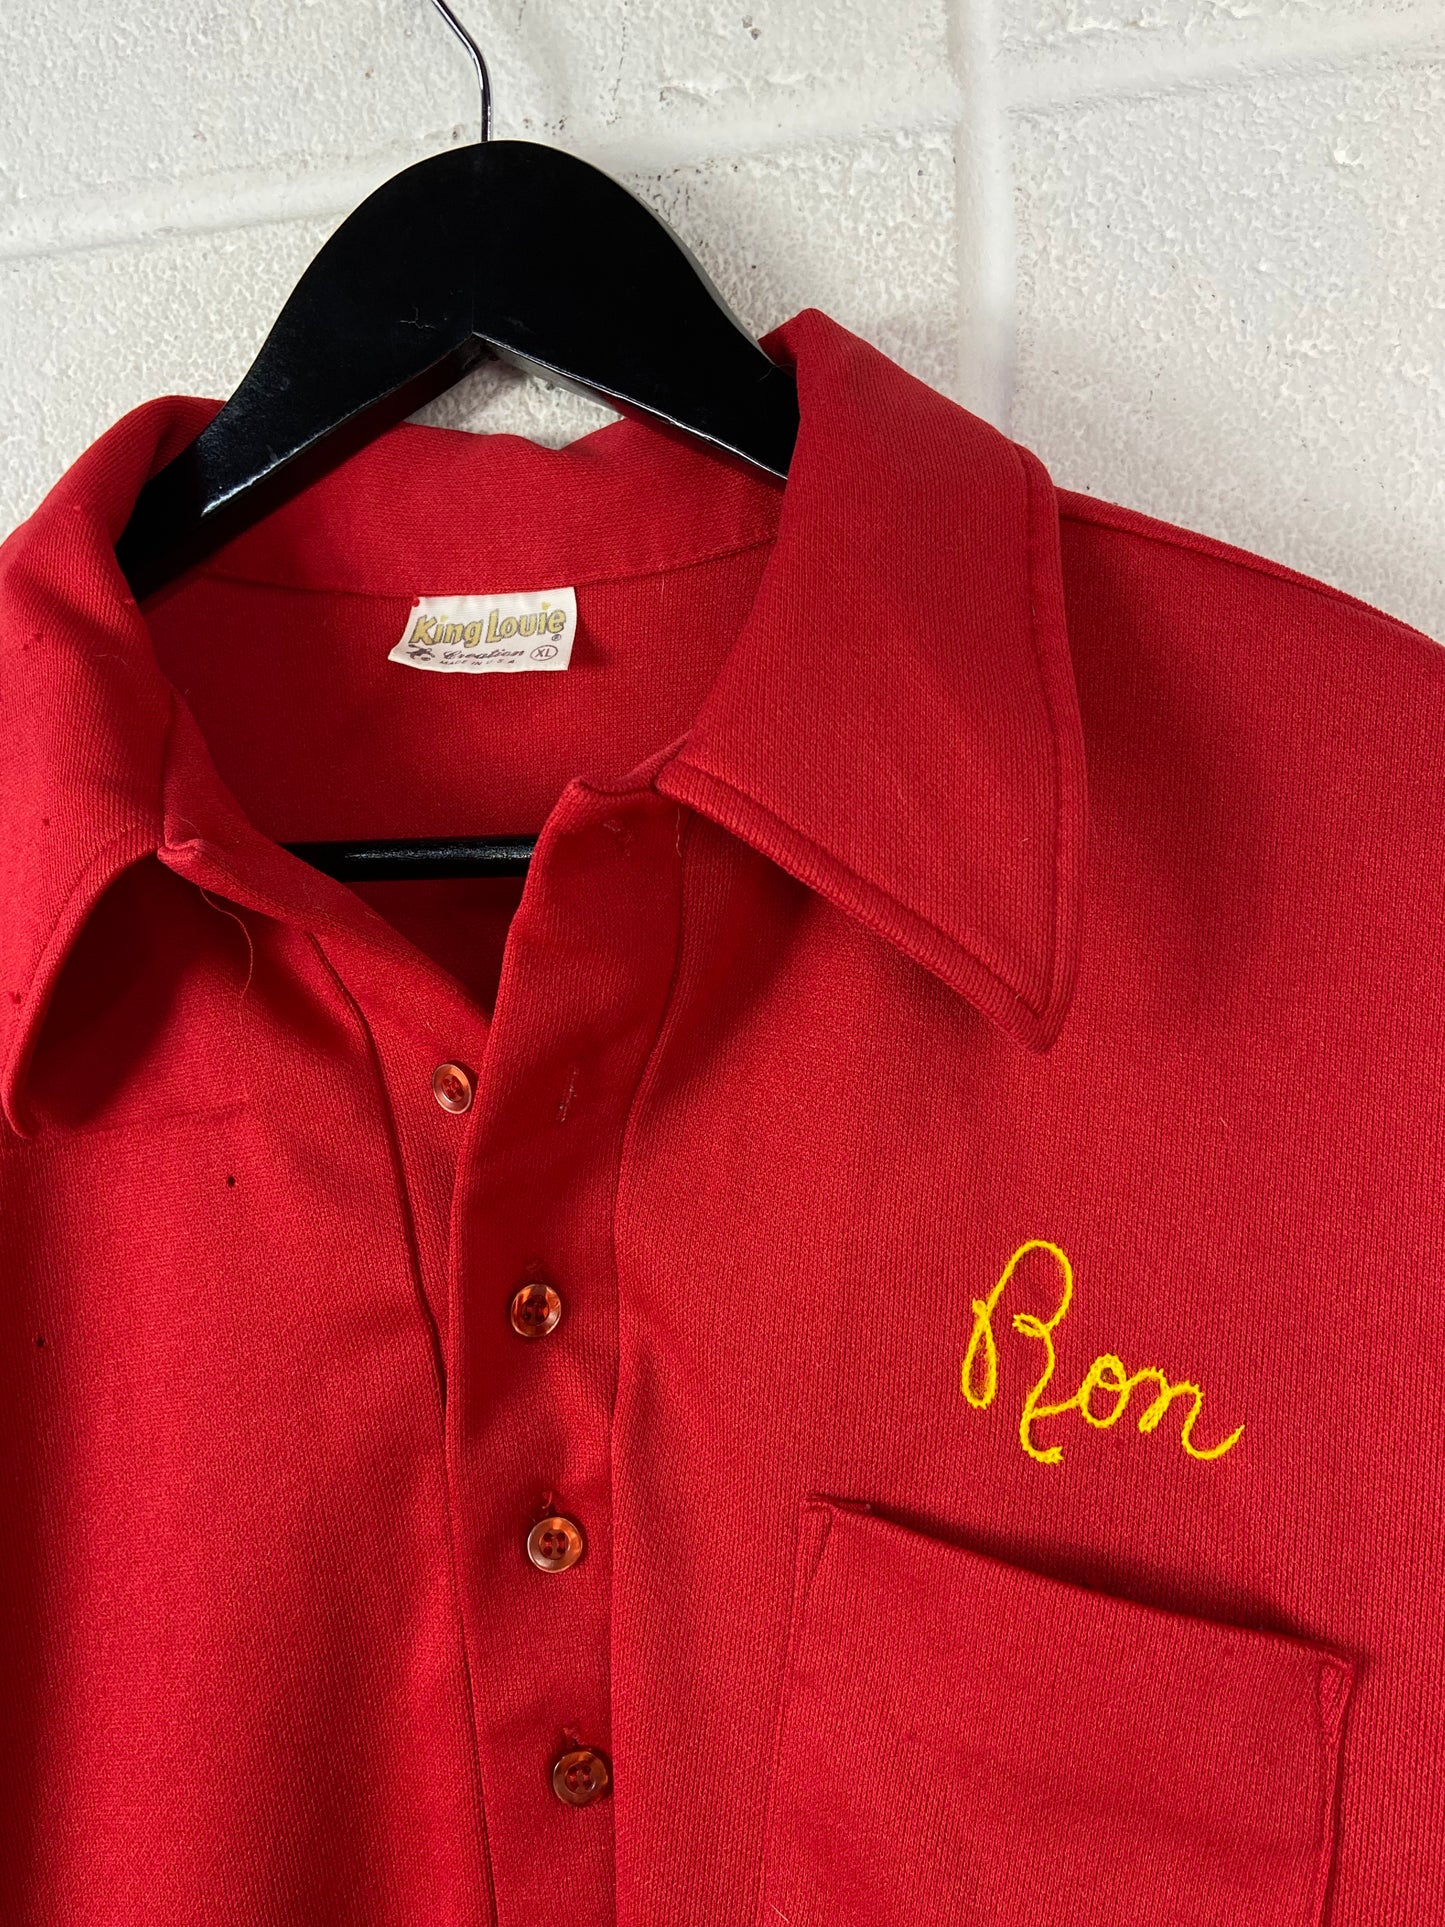 VTG 'Ron' Red Syrian Bowling Shirt Sz L/XL